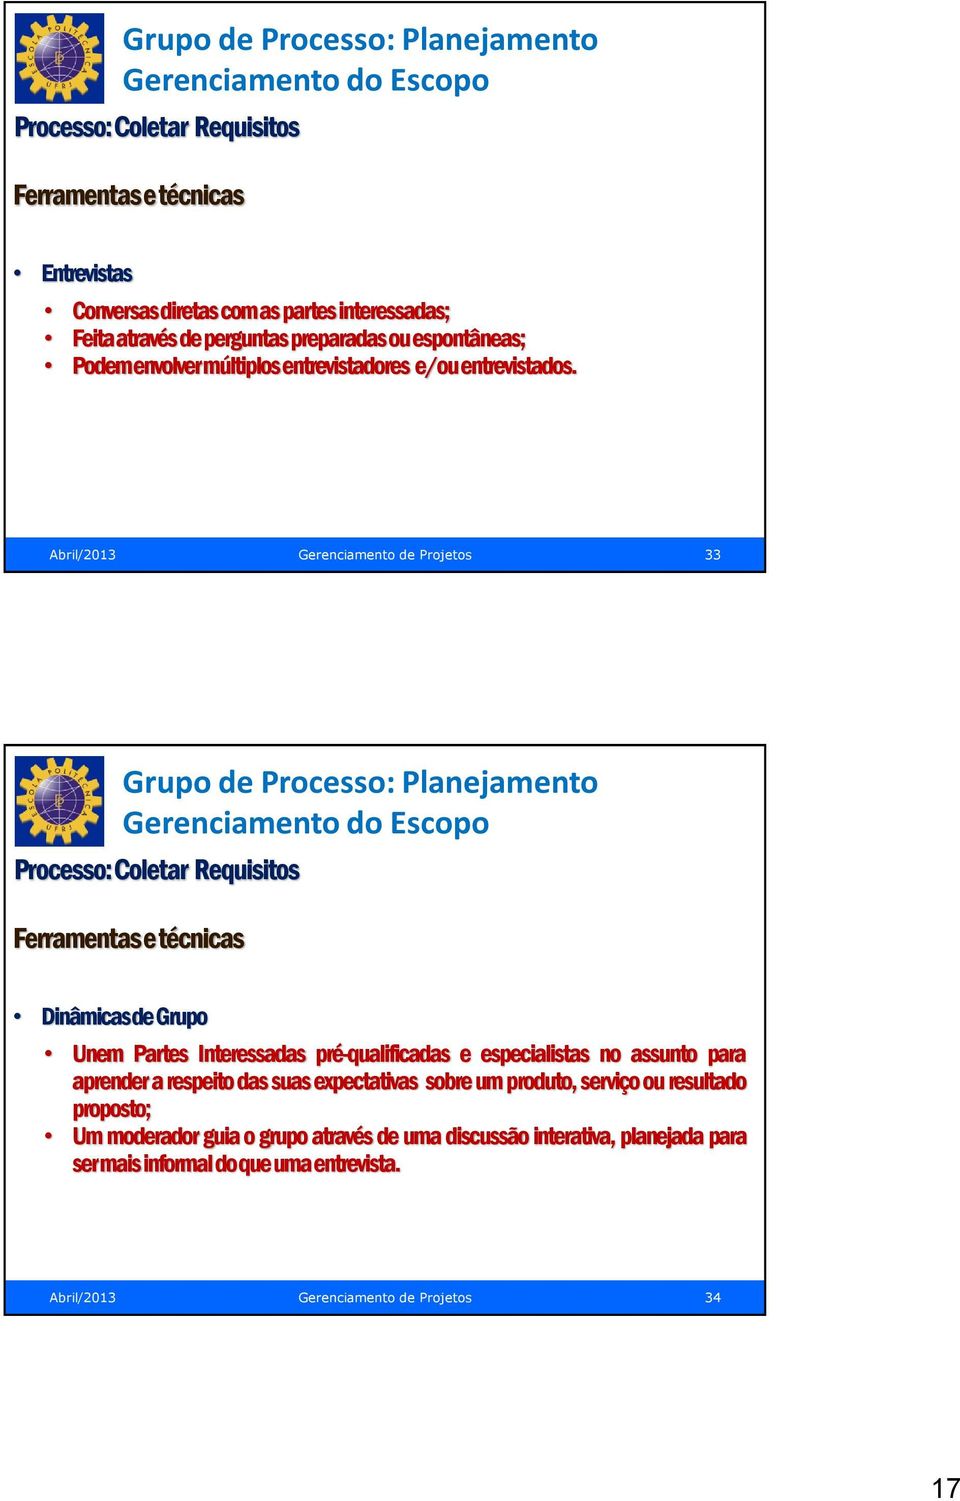 Abril/2013 Gerenciamento de Projetos 33 Gerenciamento do Escopo Processo: Coletar Requisitos Ferramentas e técnicas Dinâmicas de Grupo Unem Partes Interessadas pré-qualificadas